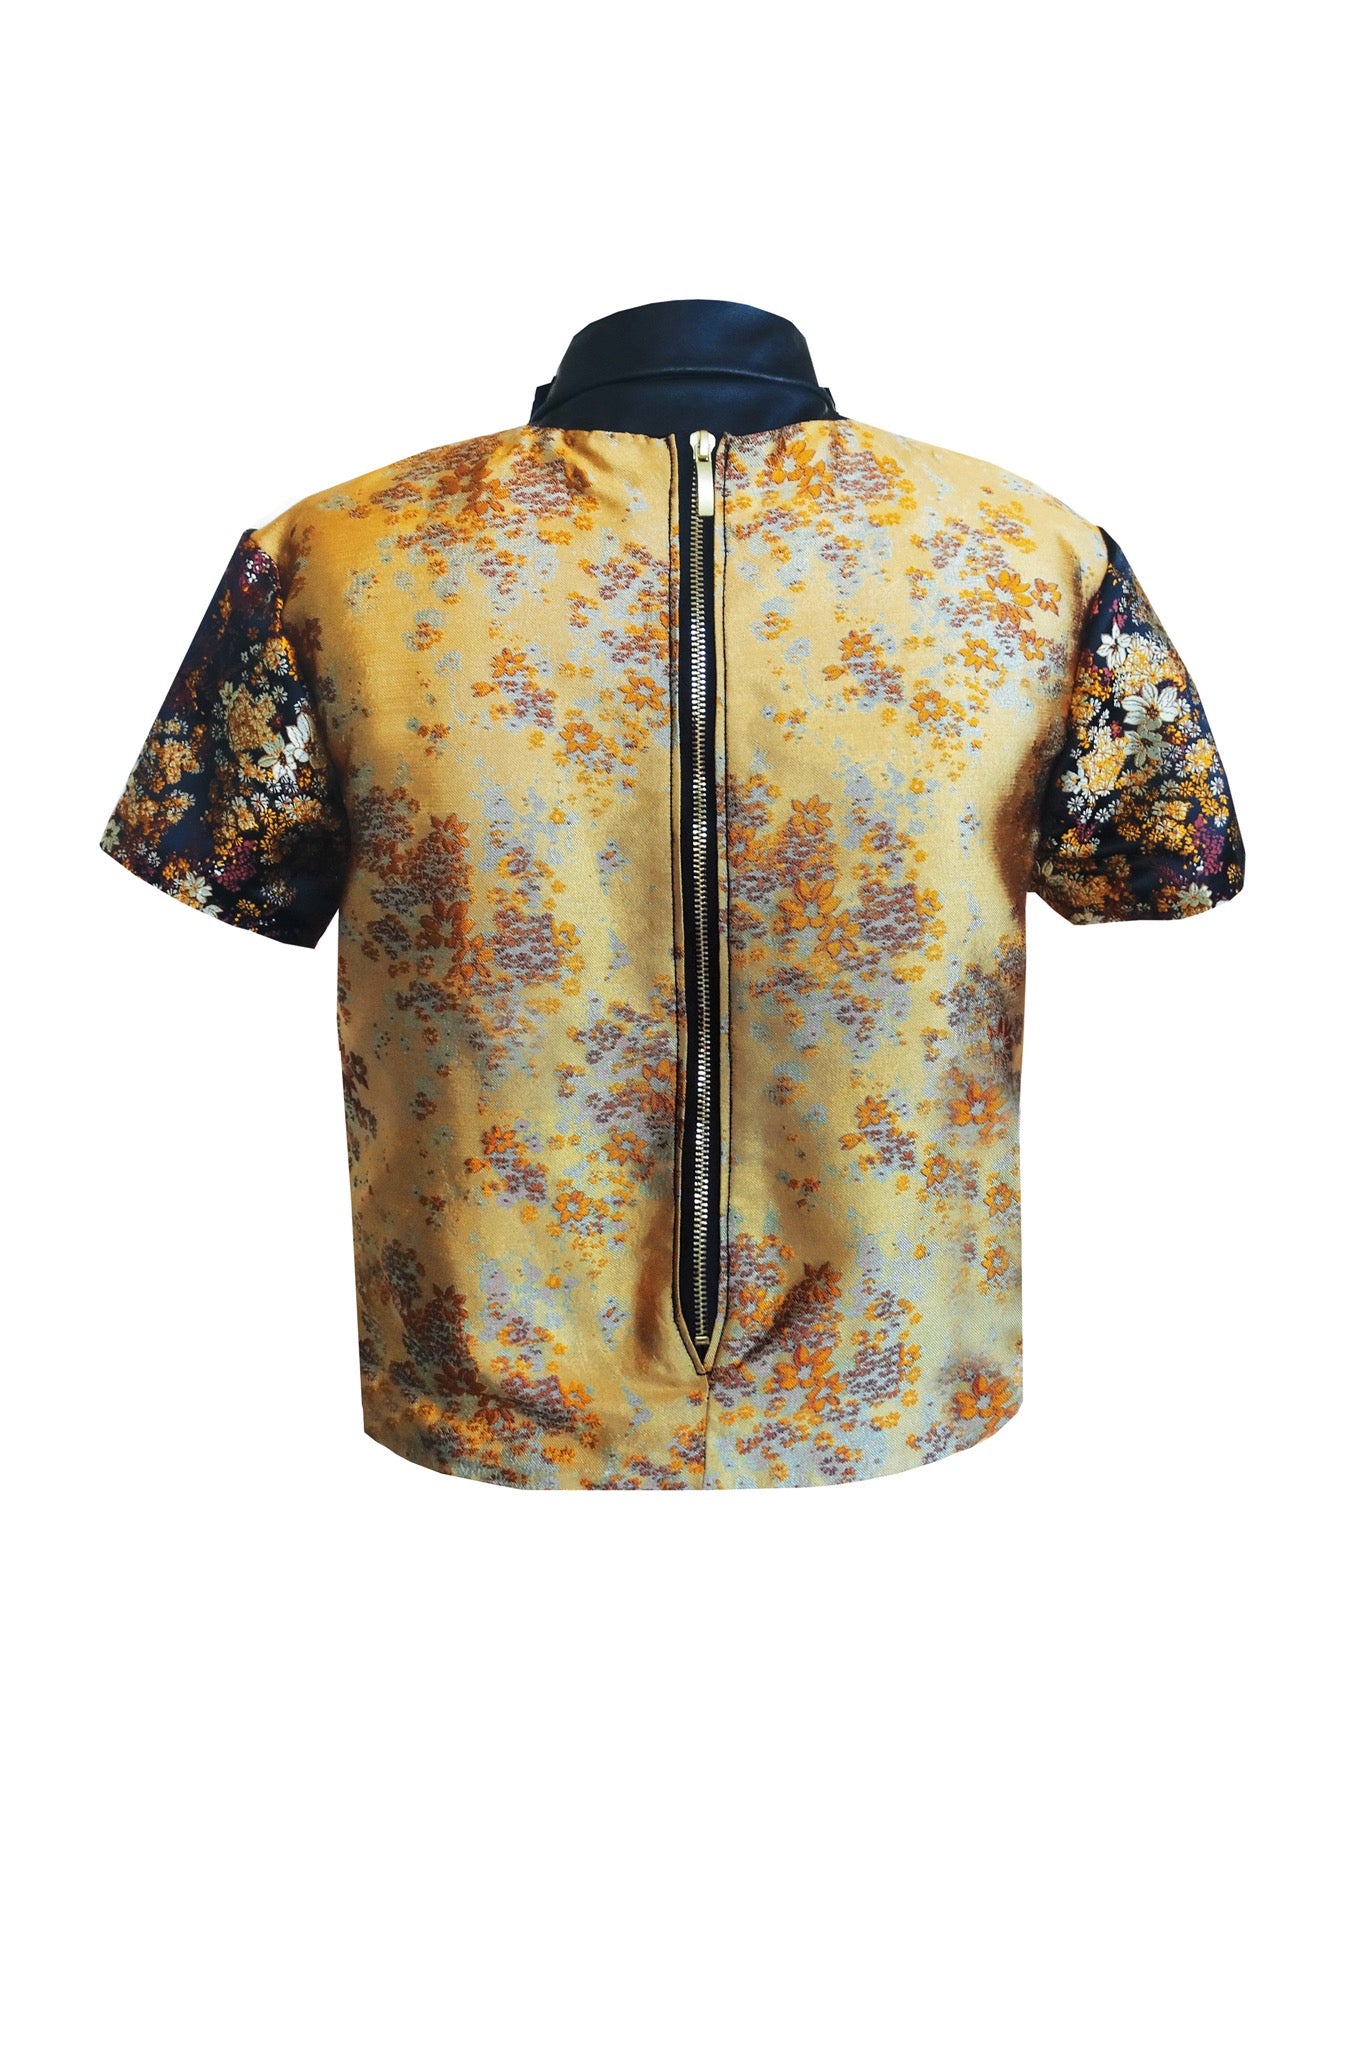 Amber Floral brocade top